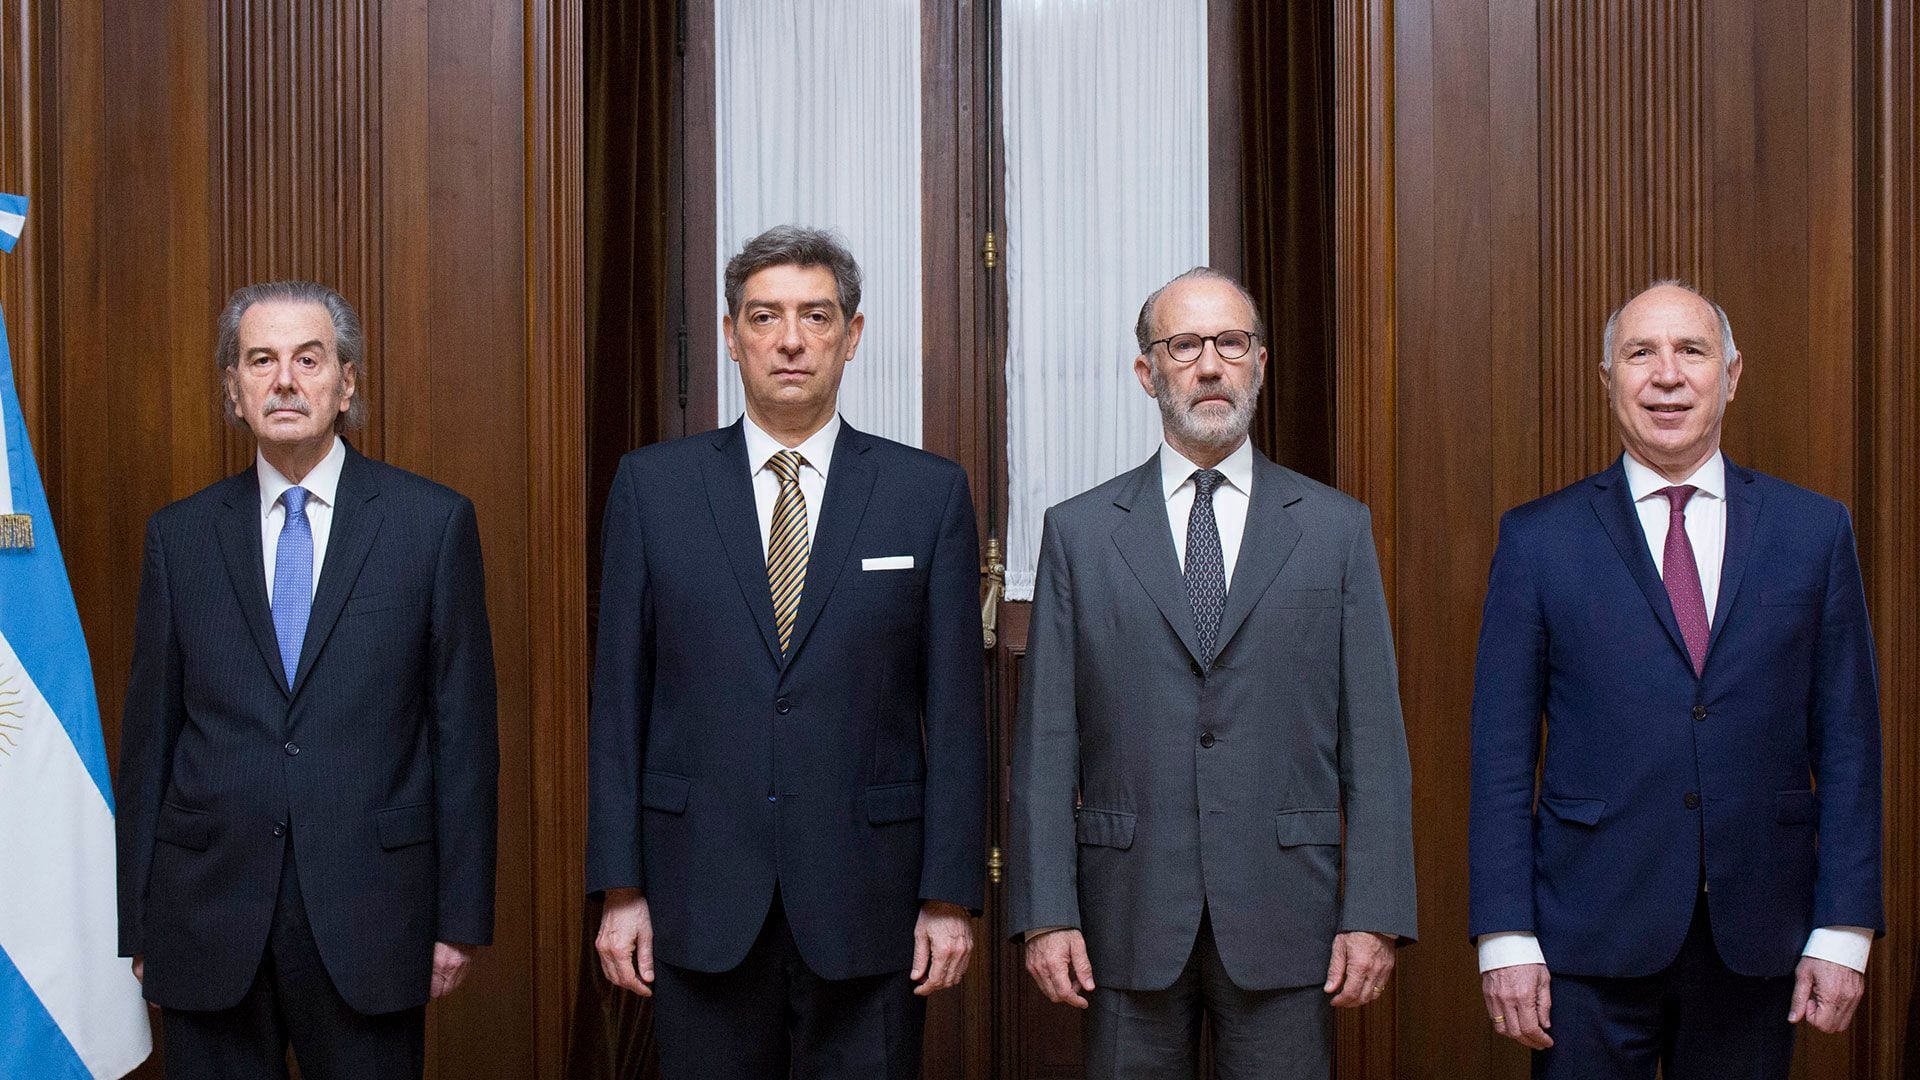 Los cuatro integrantes de la Corte Suprema, apuntados por Alberto Fernández en su intención de iniciarles juicio político
